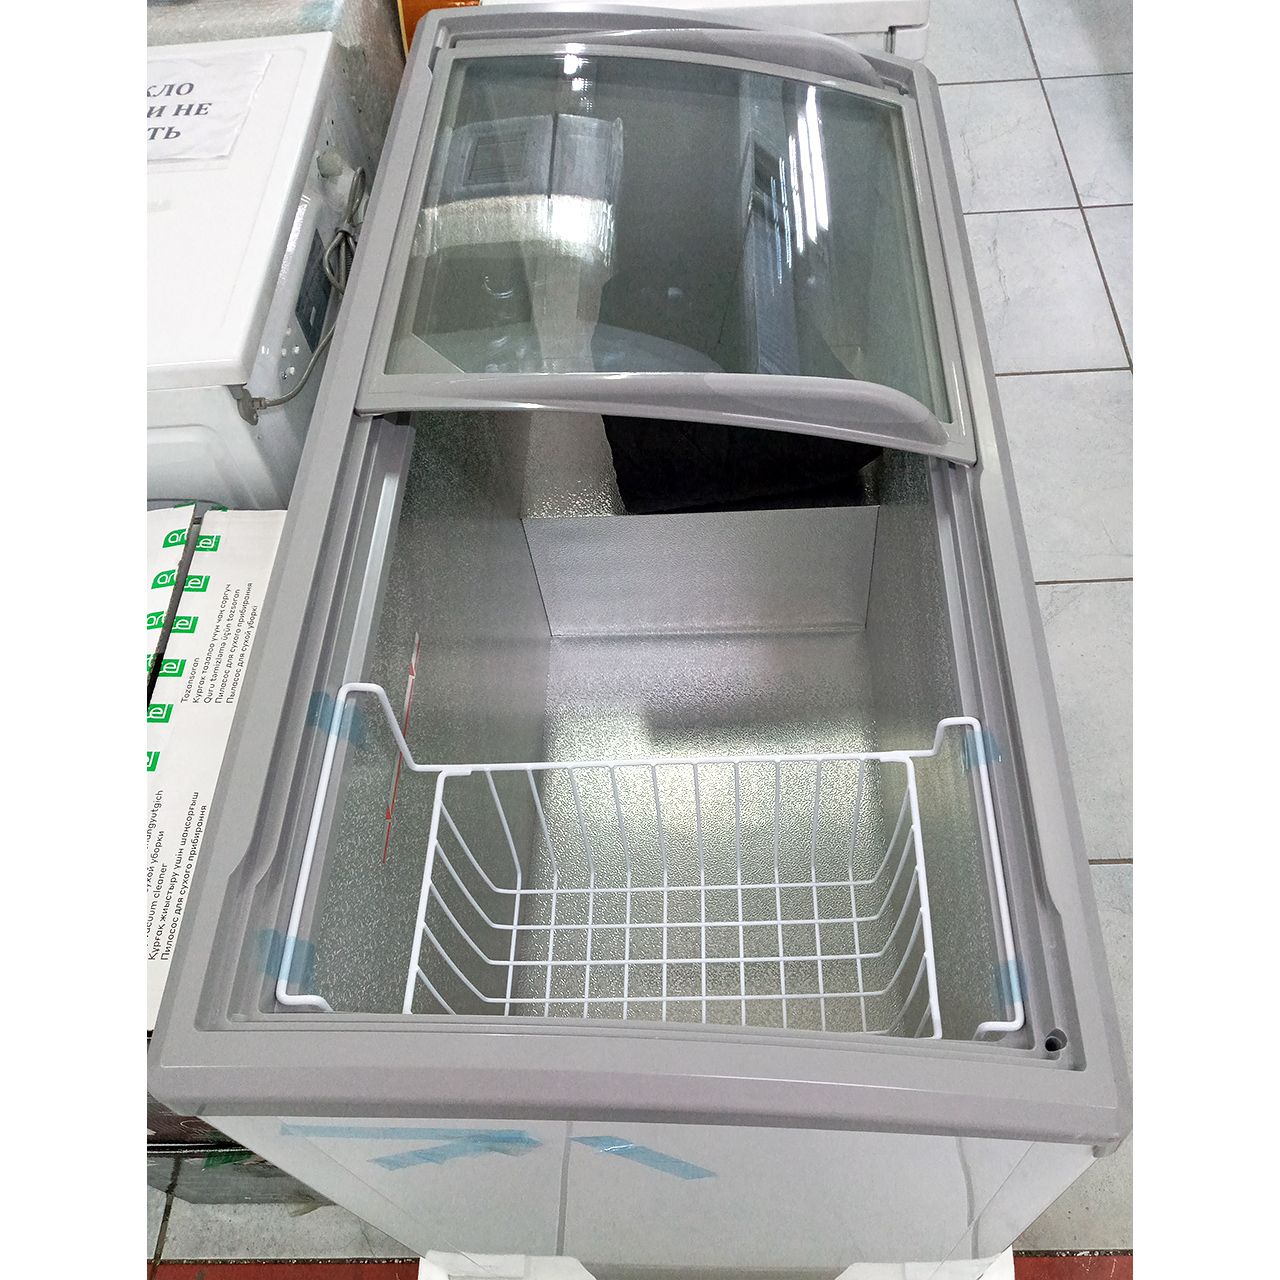 Морозильник витринный Artel 330 литров